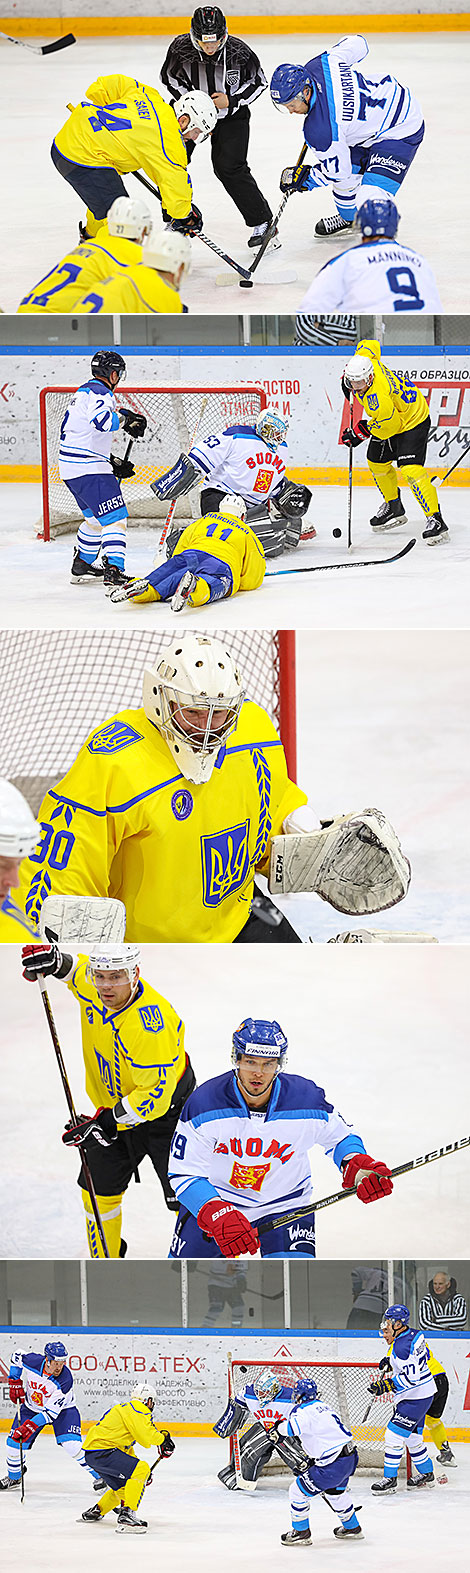 Финны обыграли хоккеистов Украины на XVI Рождественском турнире 